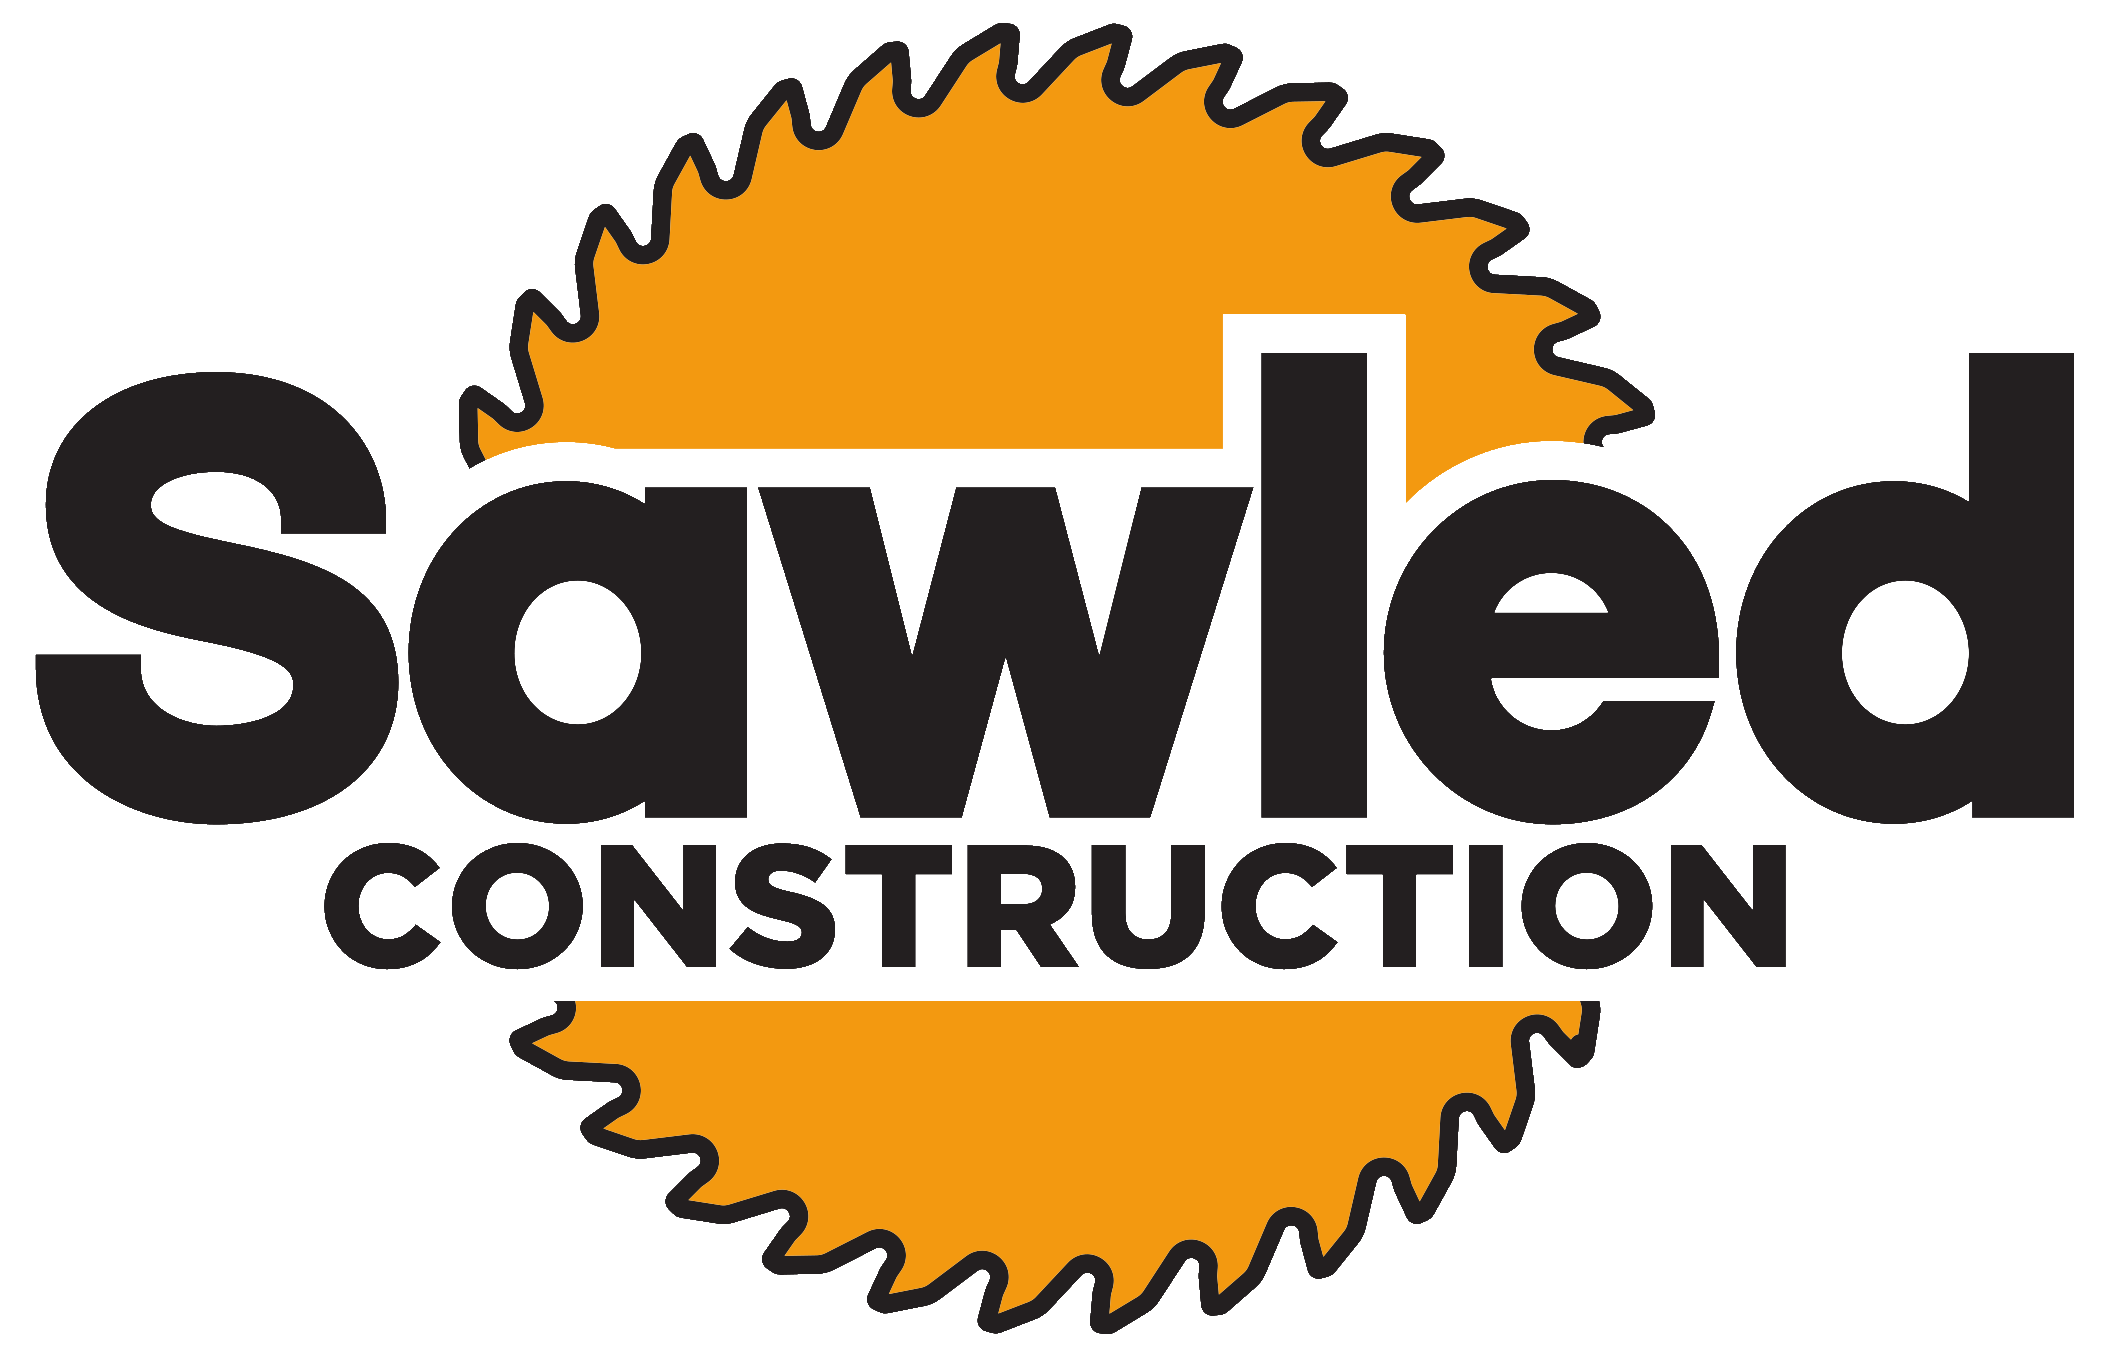 Sawled Construction Logo